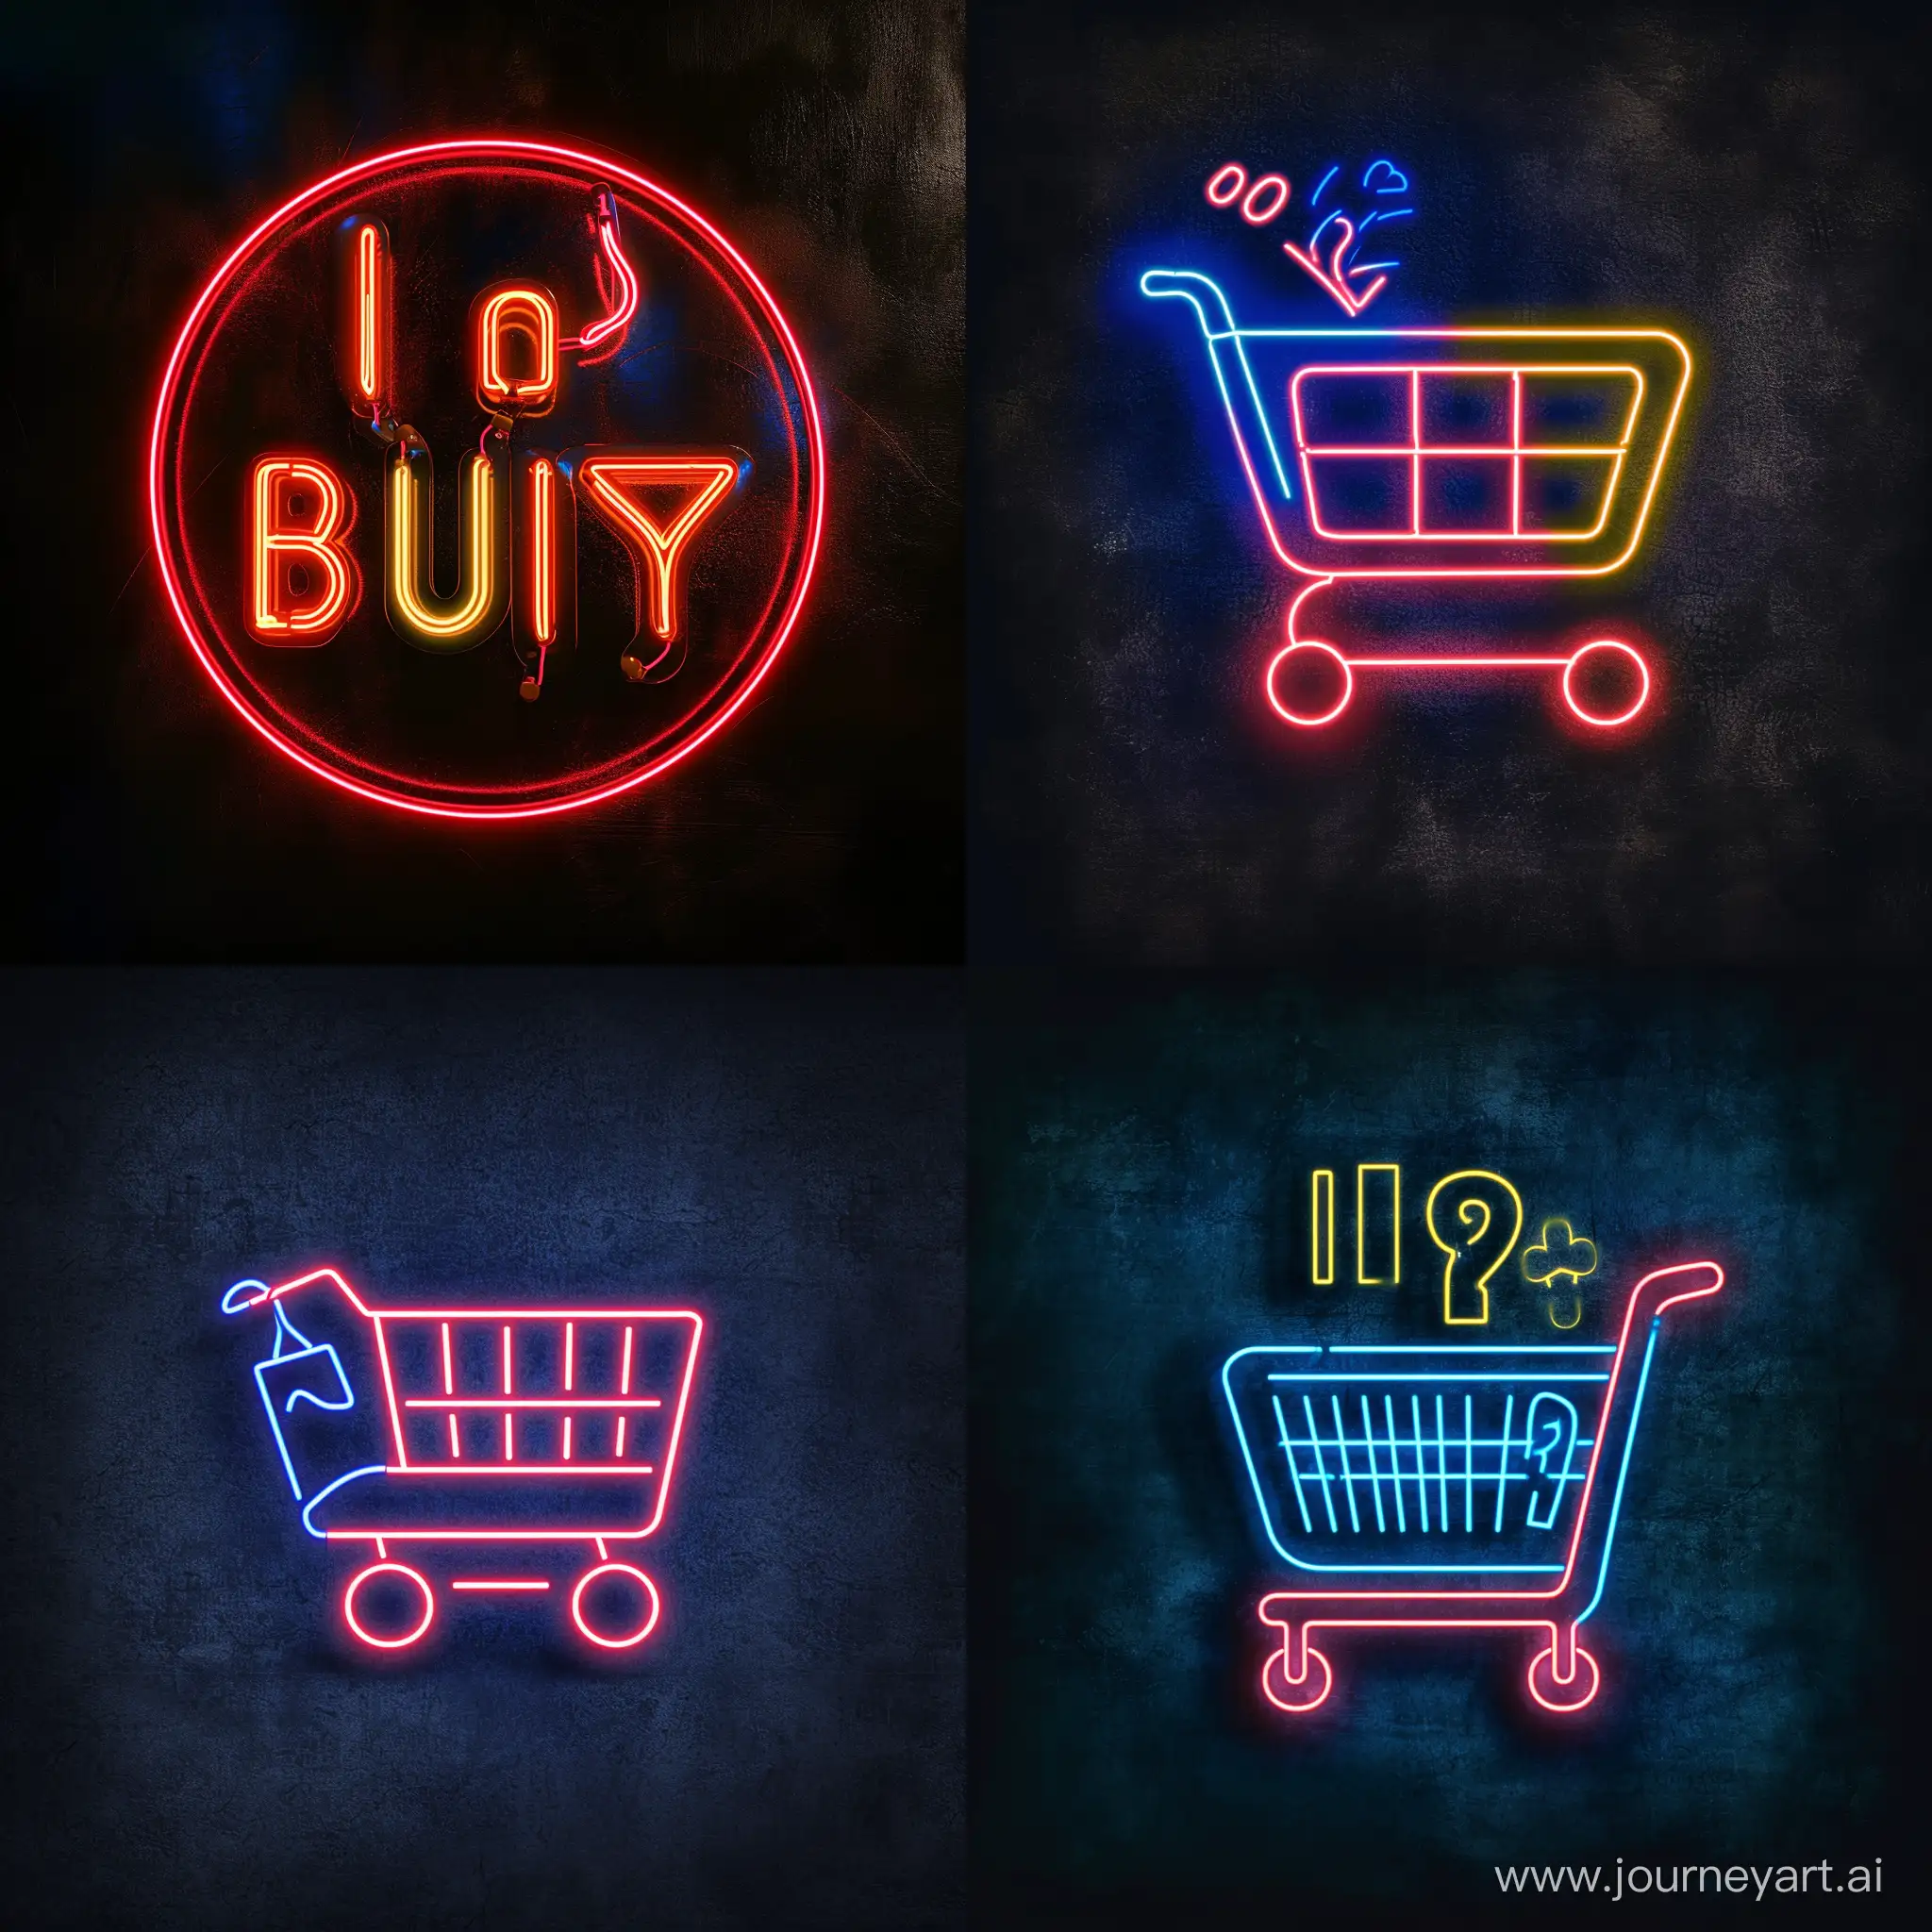 “Я покупаю” in neon style